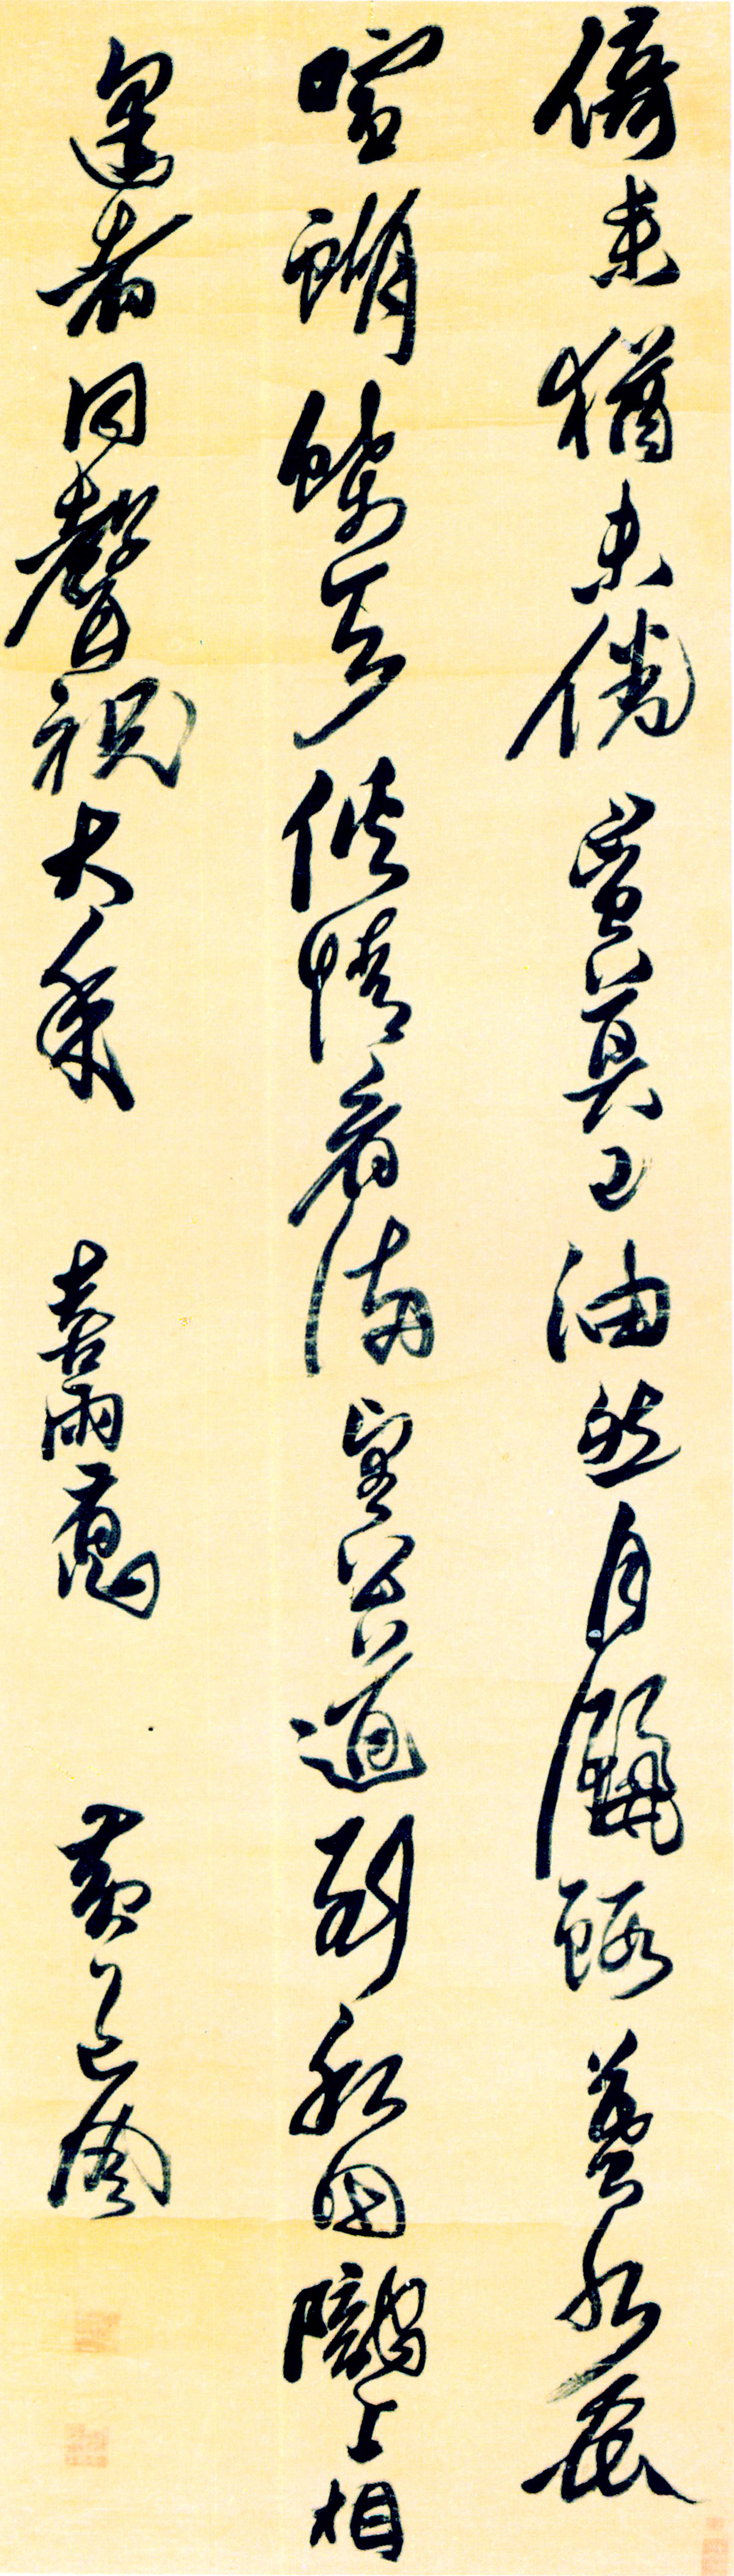 黄道周行书《喜雨诗轴》-北京故宫博物院藏(图1)